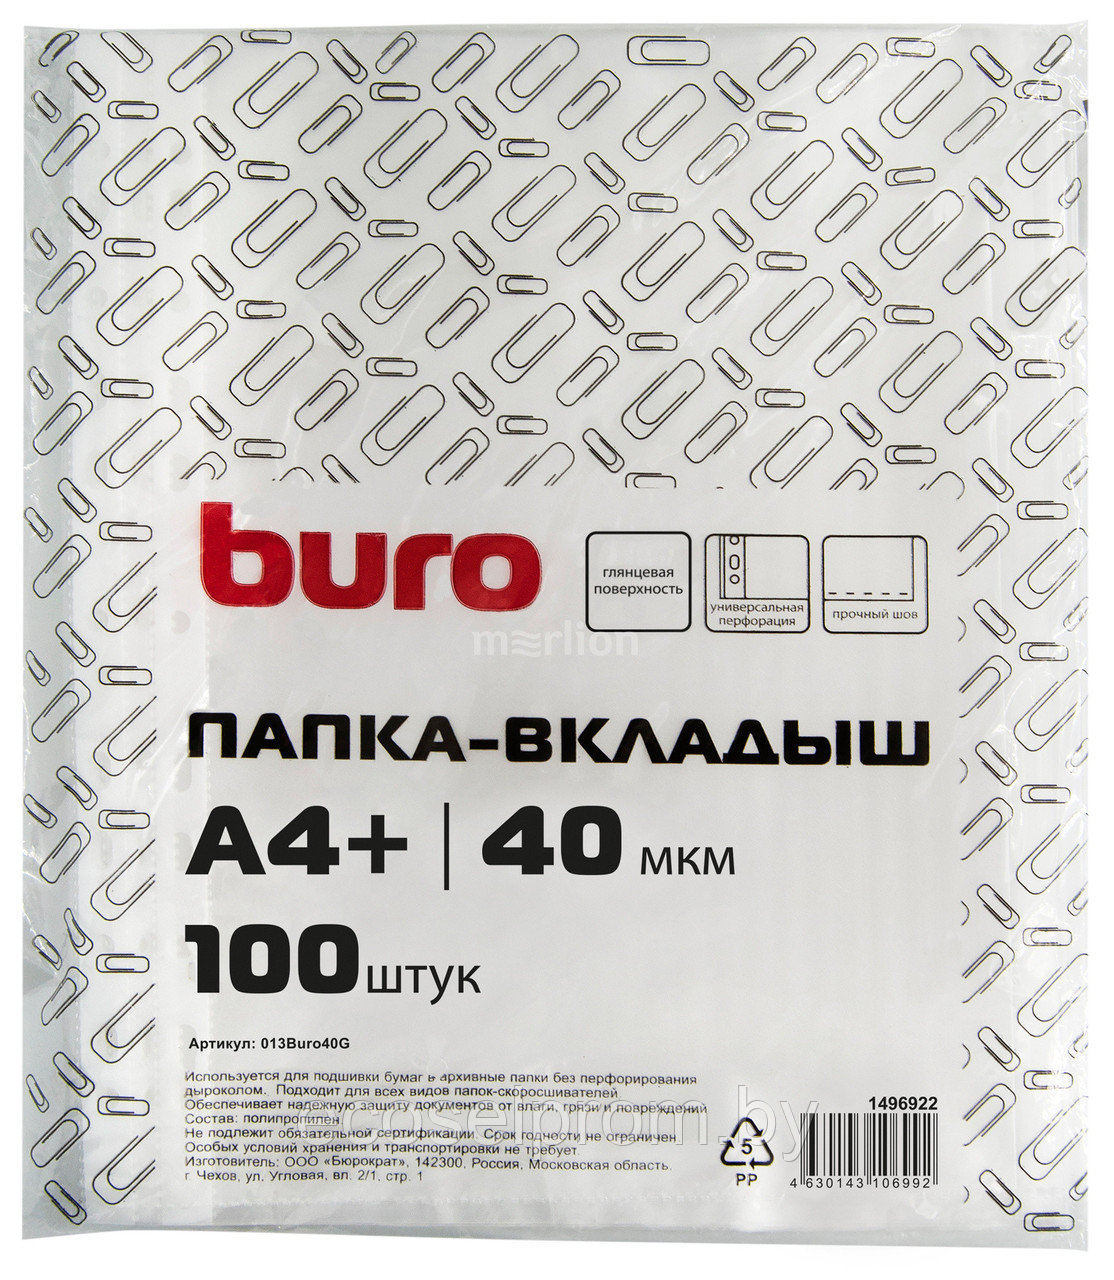 Папка-вкладыш Buro глянцевые А4+ 40мкм (упак.:100шт), фото 1